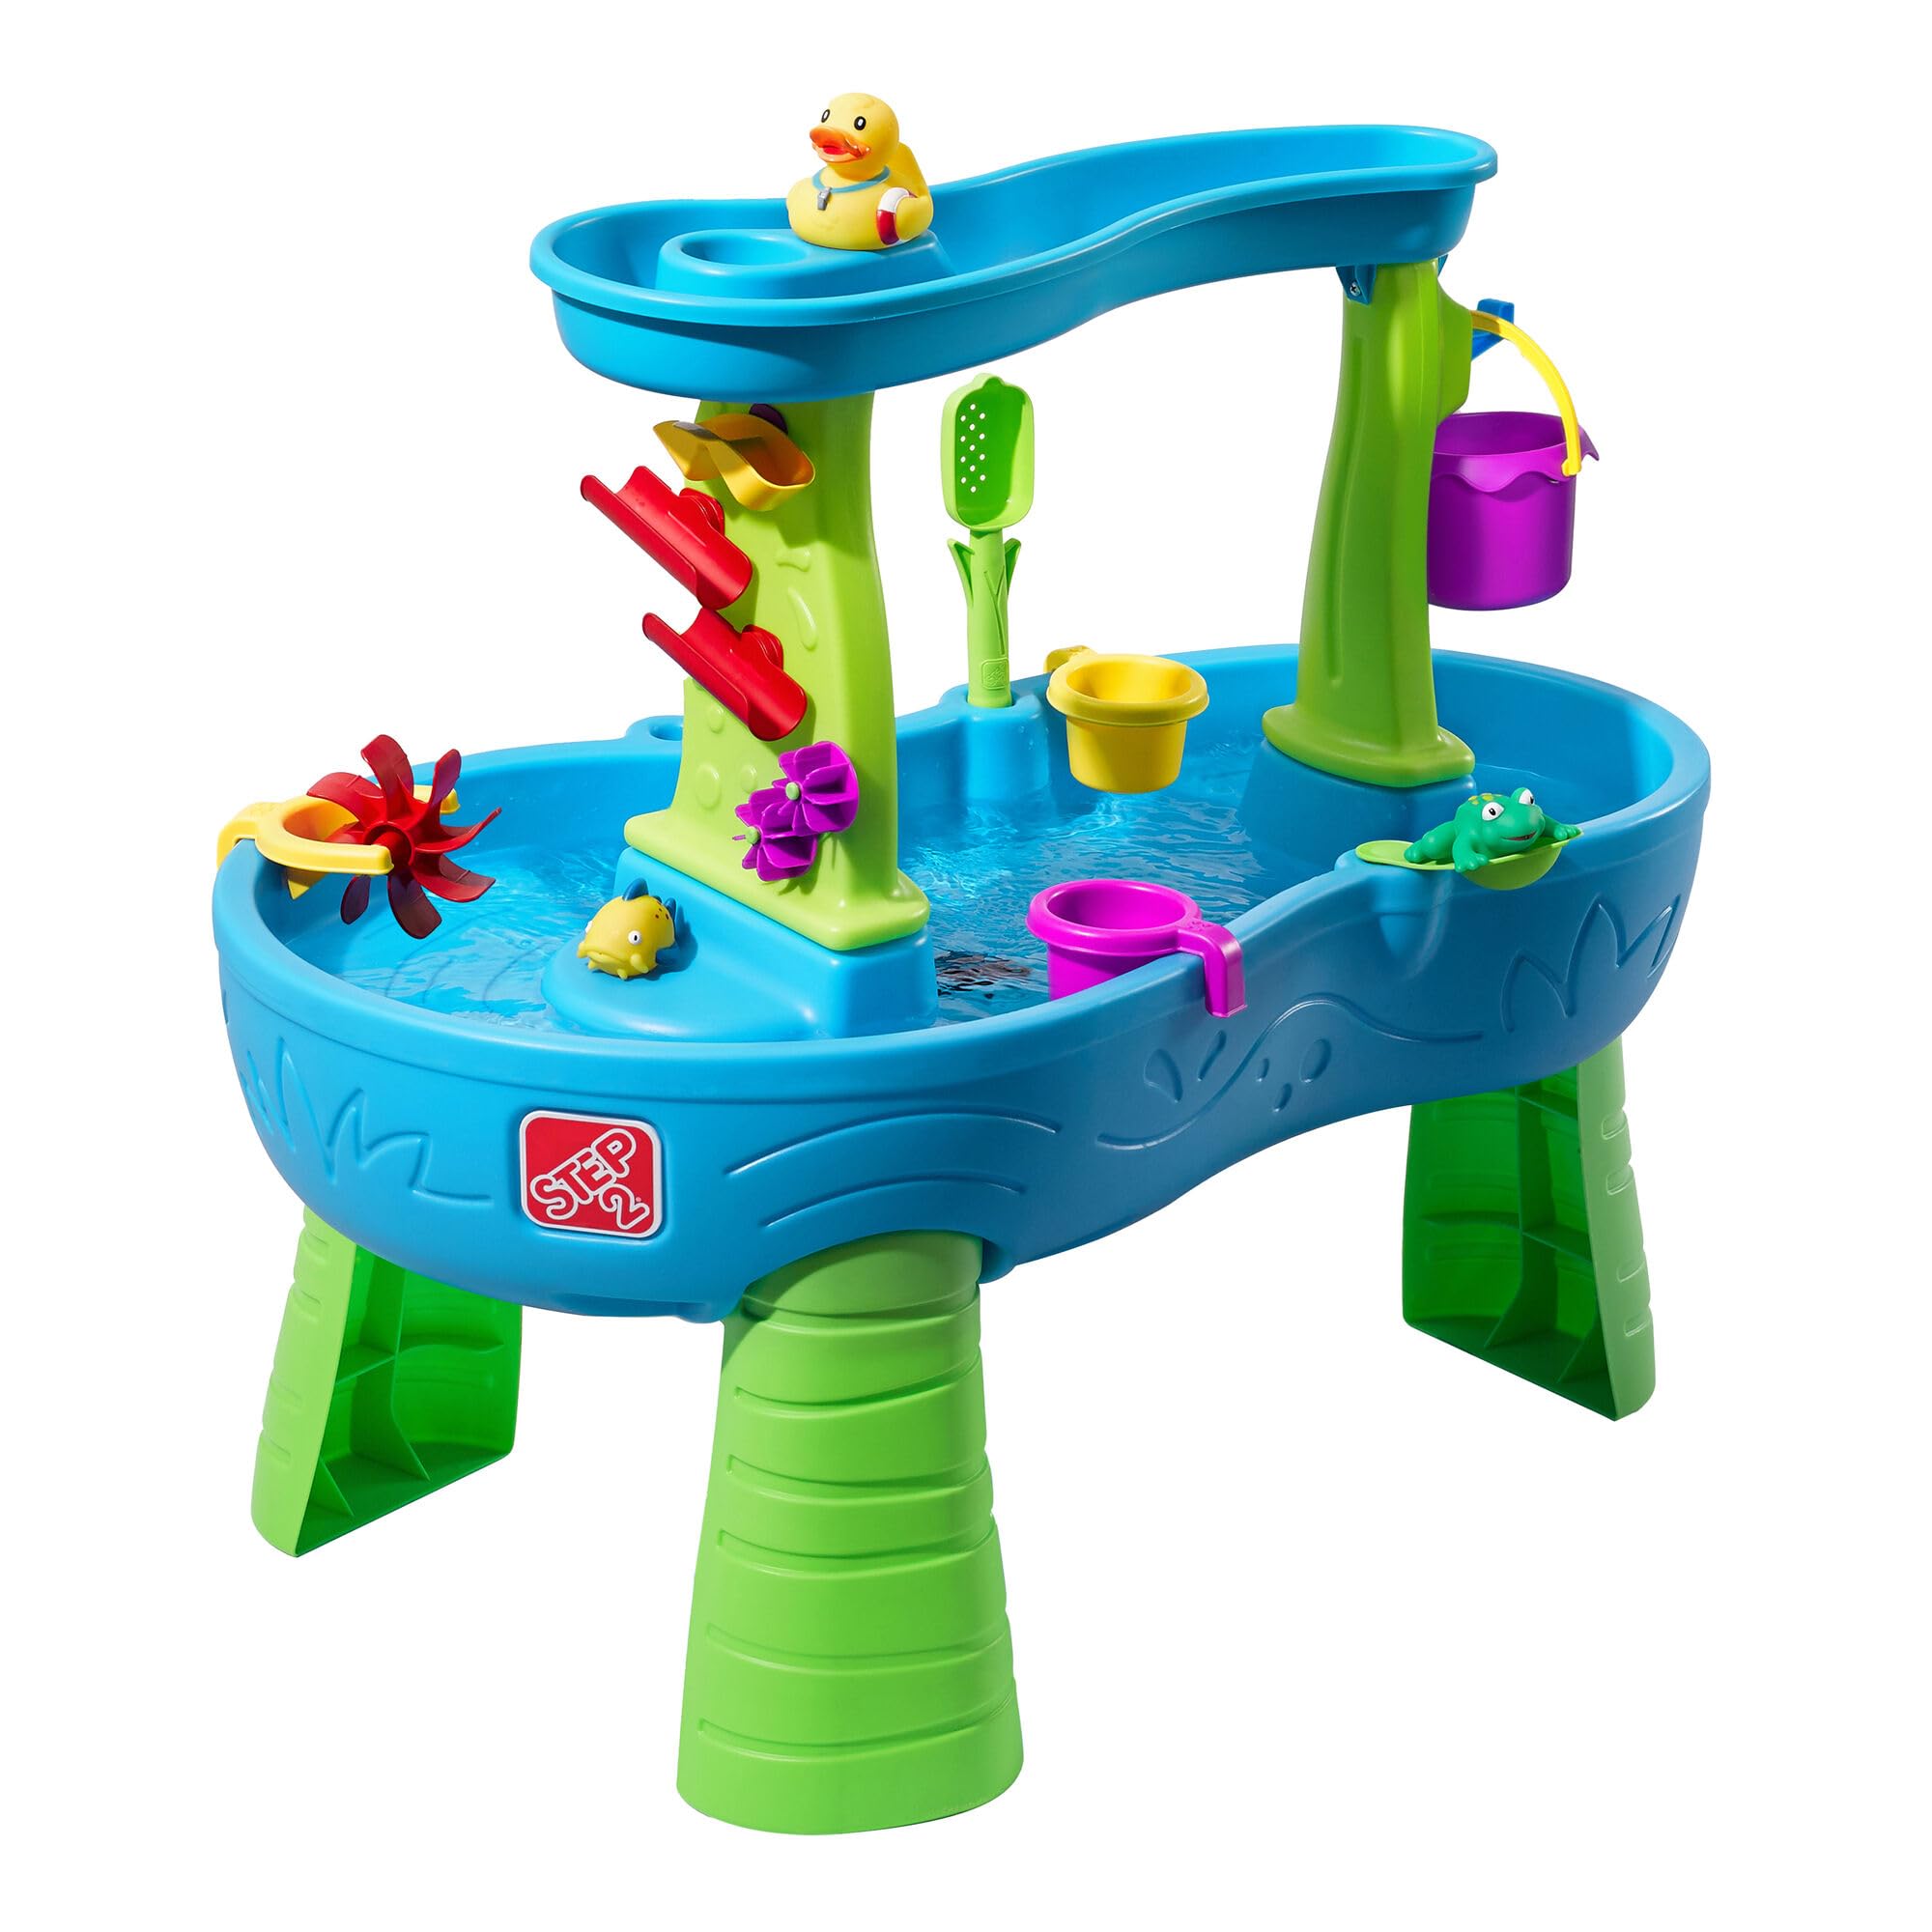 Step2 Rain Showers Wasserspieltisch | Großer Wassertisch mit 13-teiligem Zubehörset | Garten Wasser Spieltisch für Kinder in Blau und Grün.